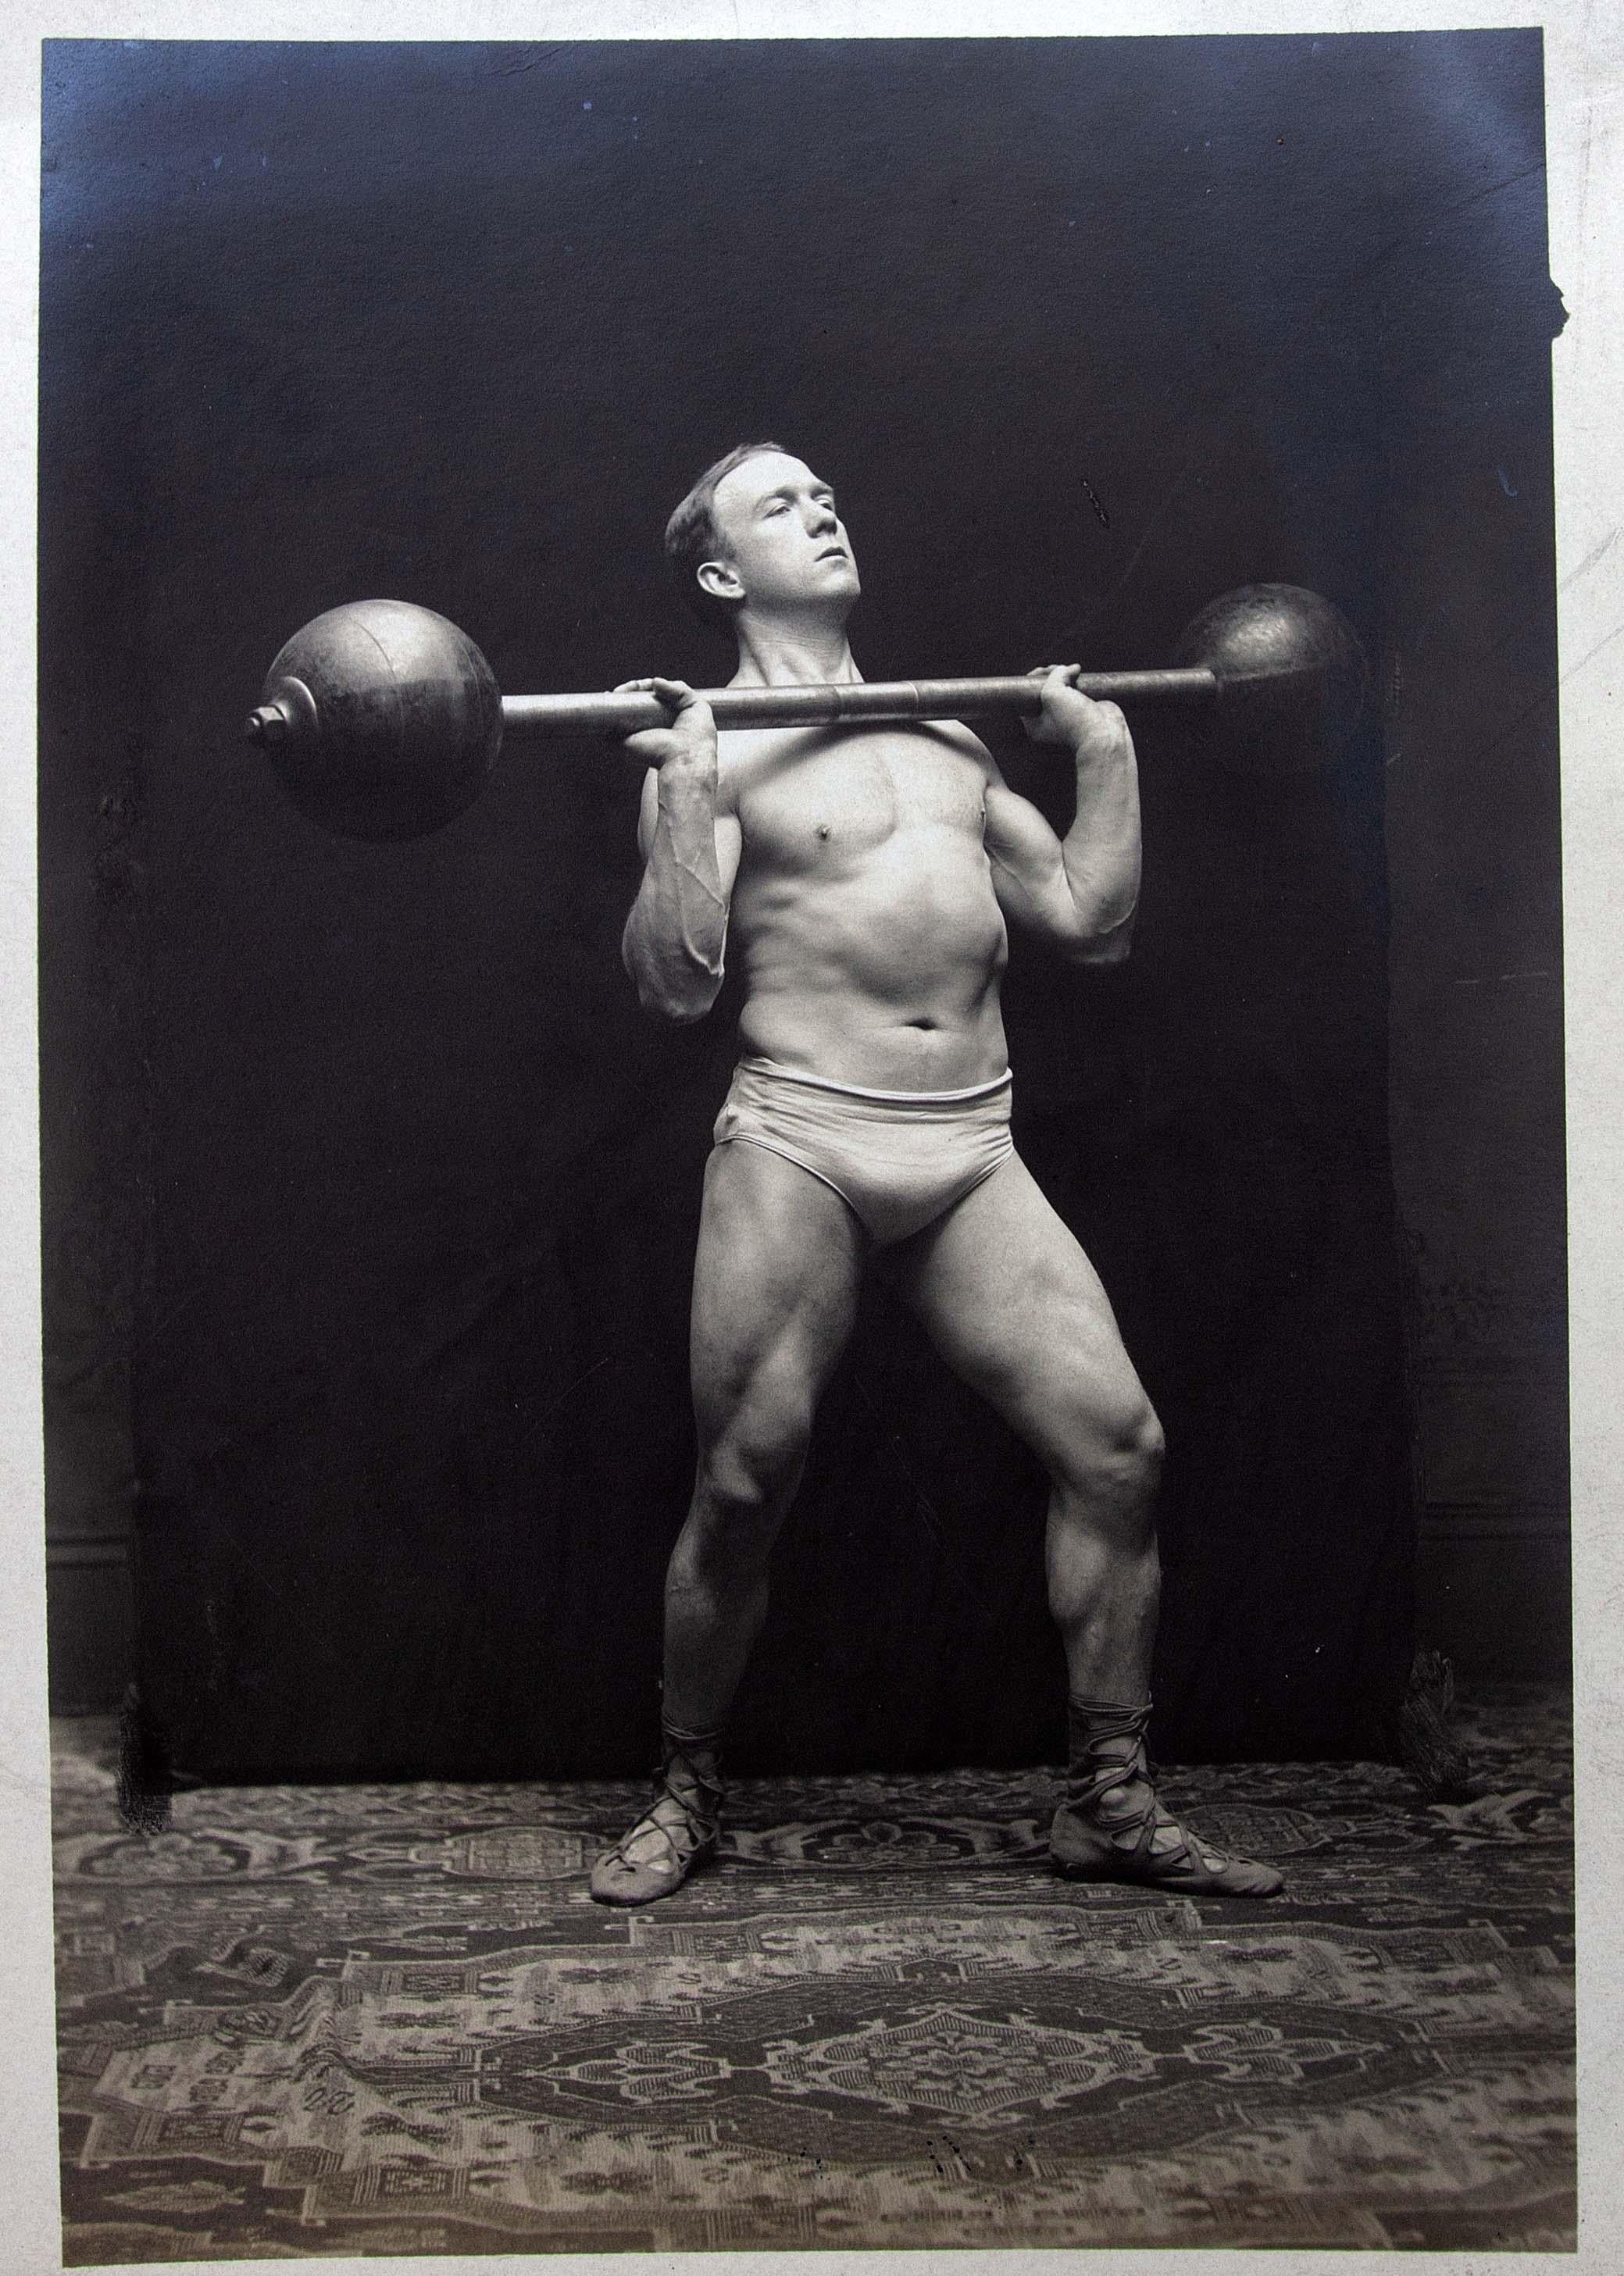 Große Sammlung von Strongman-Fotos aus dem frühen 20. Jahrhundert. Jeweils 5